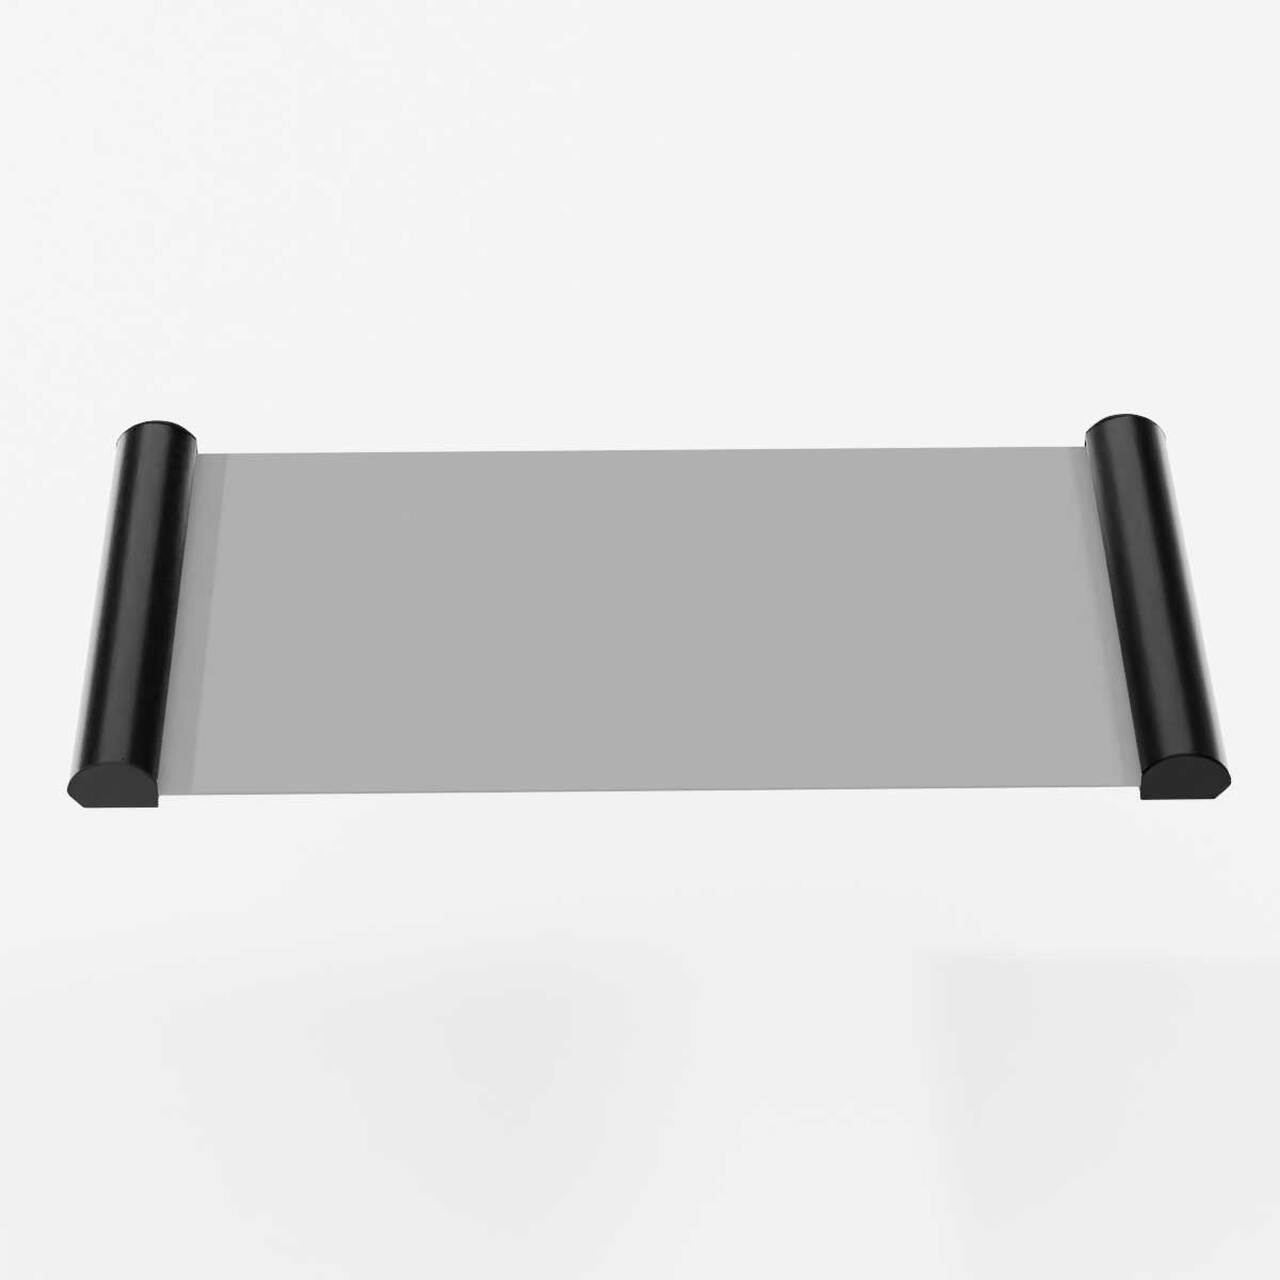 Indicator Ușă, format A5 (148x210mm), cu hanger click negru, JJ DISPLAYS